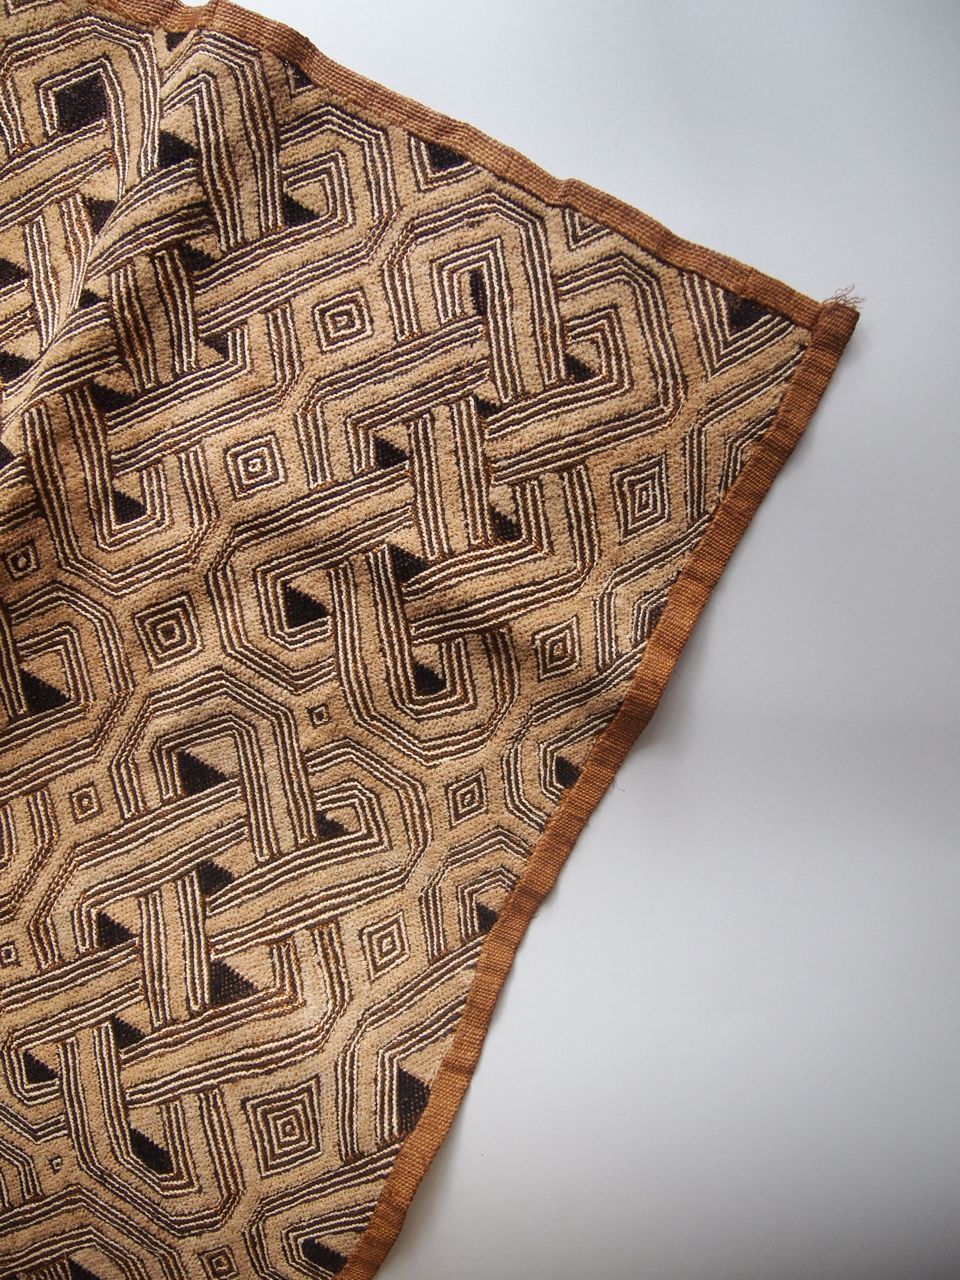 ＜アフリカ民藝＞”幾何学模様の古い布”（クバ布）01 | Walls_Magasin